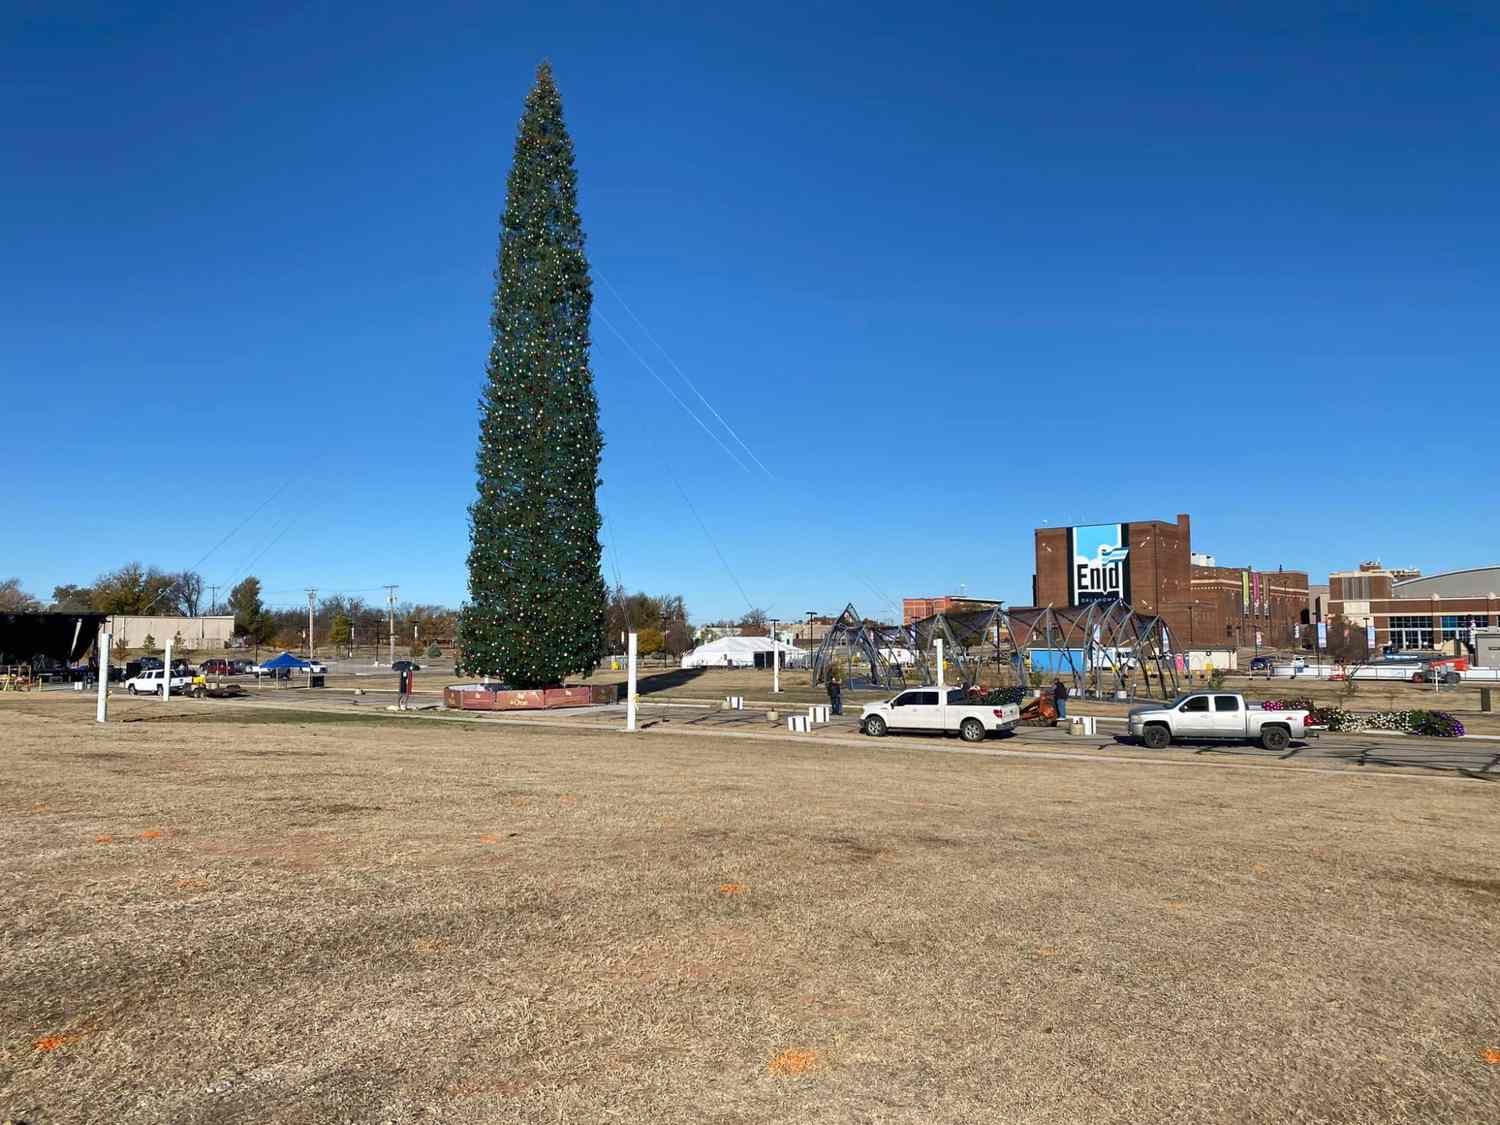 Lighting of The World’s Tallest Christmas Tree Slated for November 25 in Enid